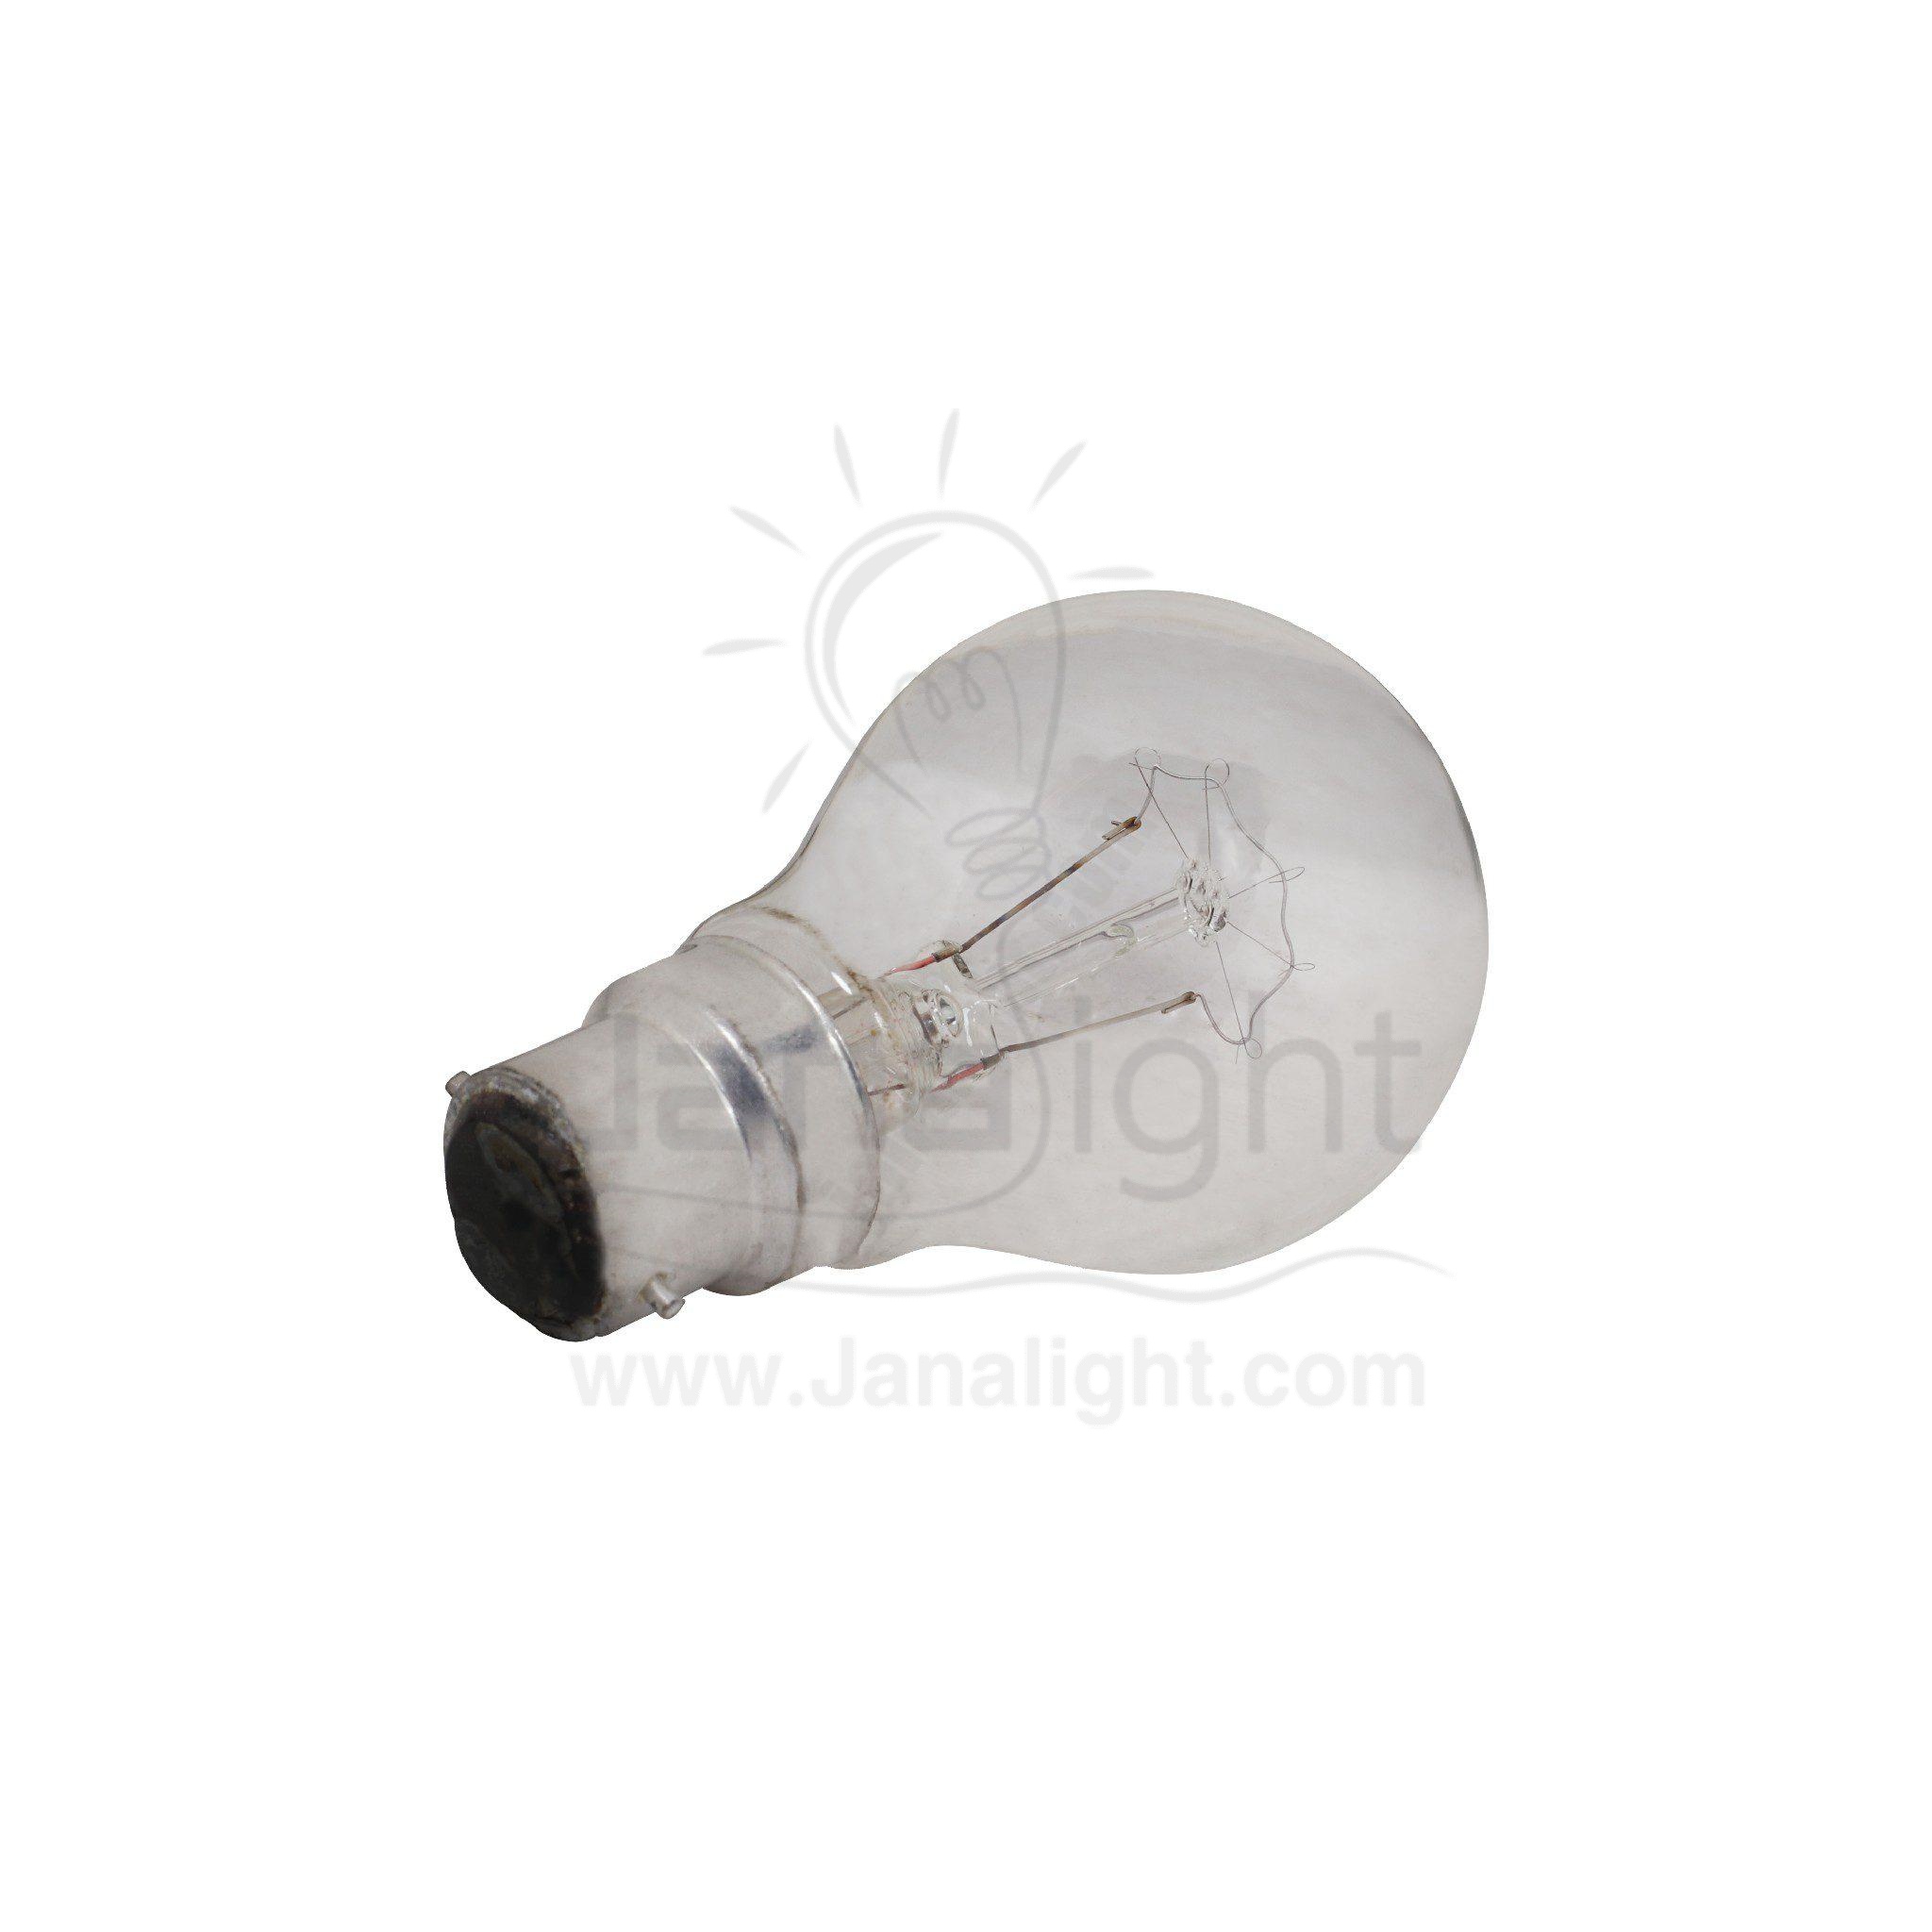 لمبة 100 وات شفاف هالوجين مسمار Led Lamp B22 100 watt